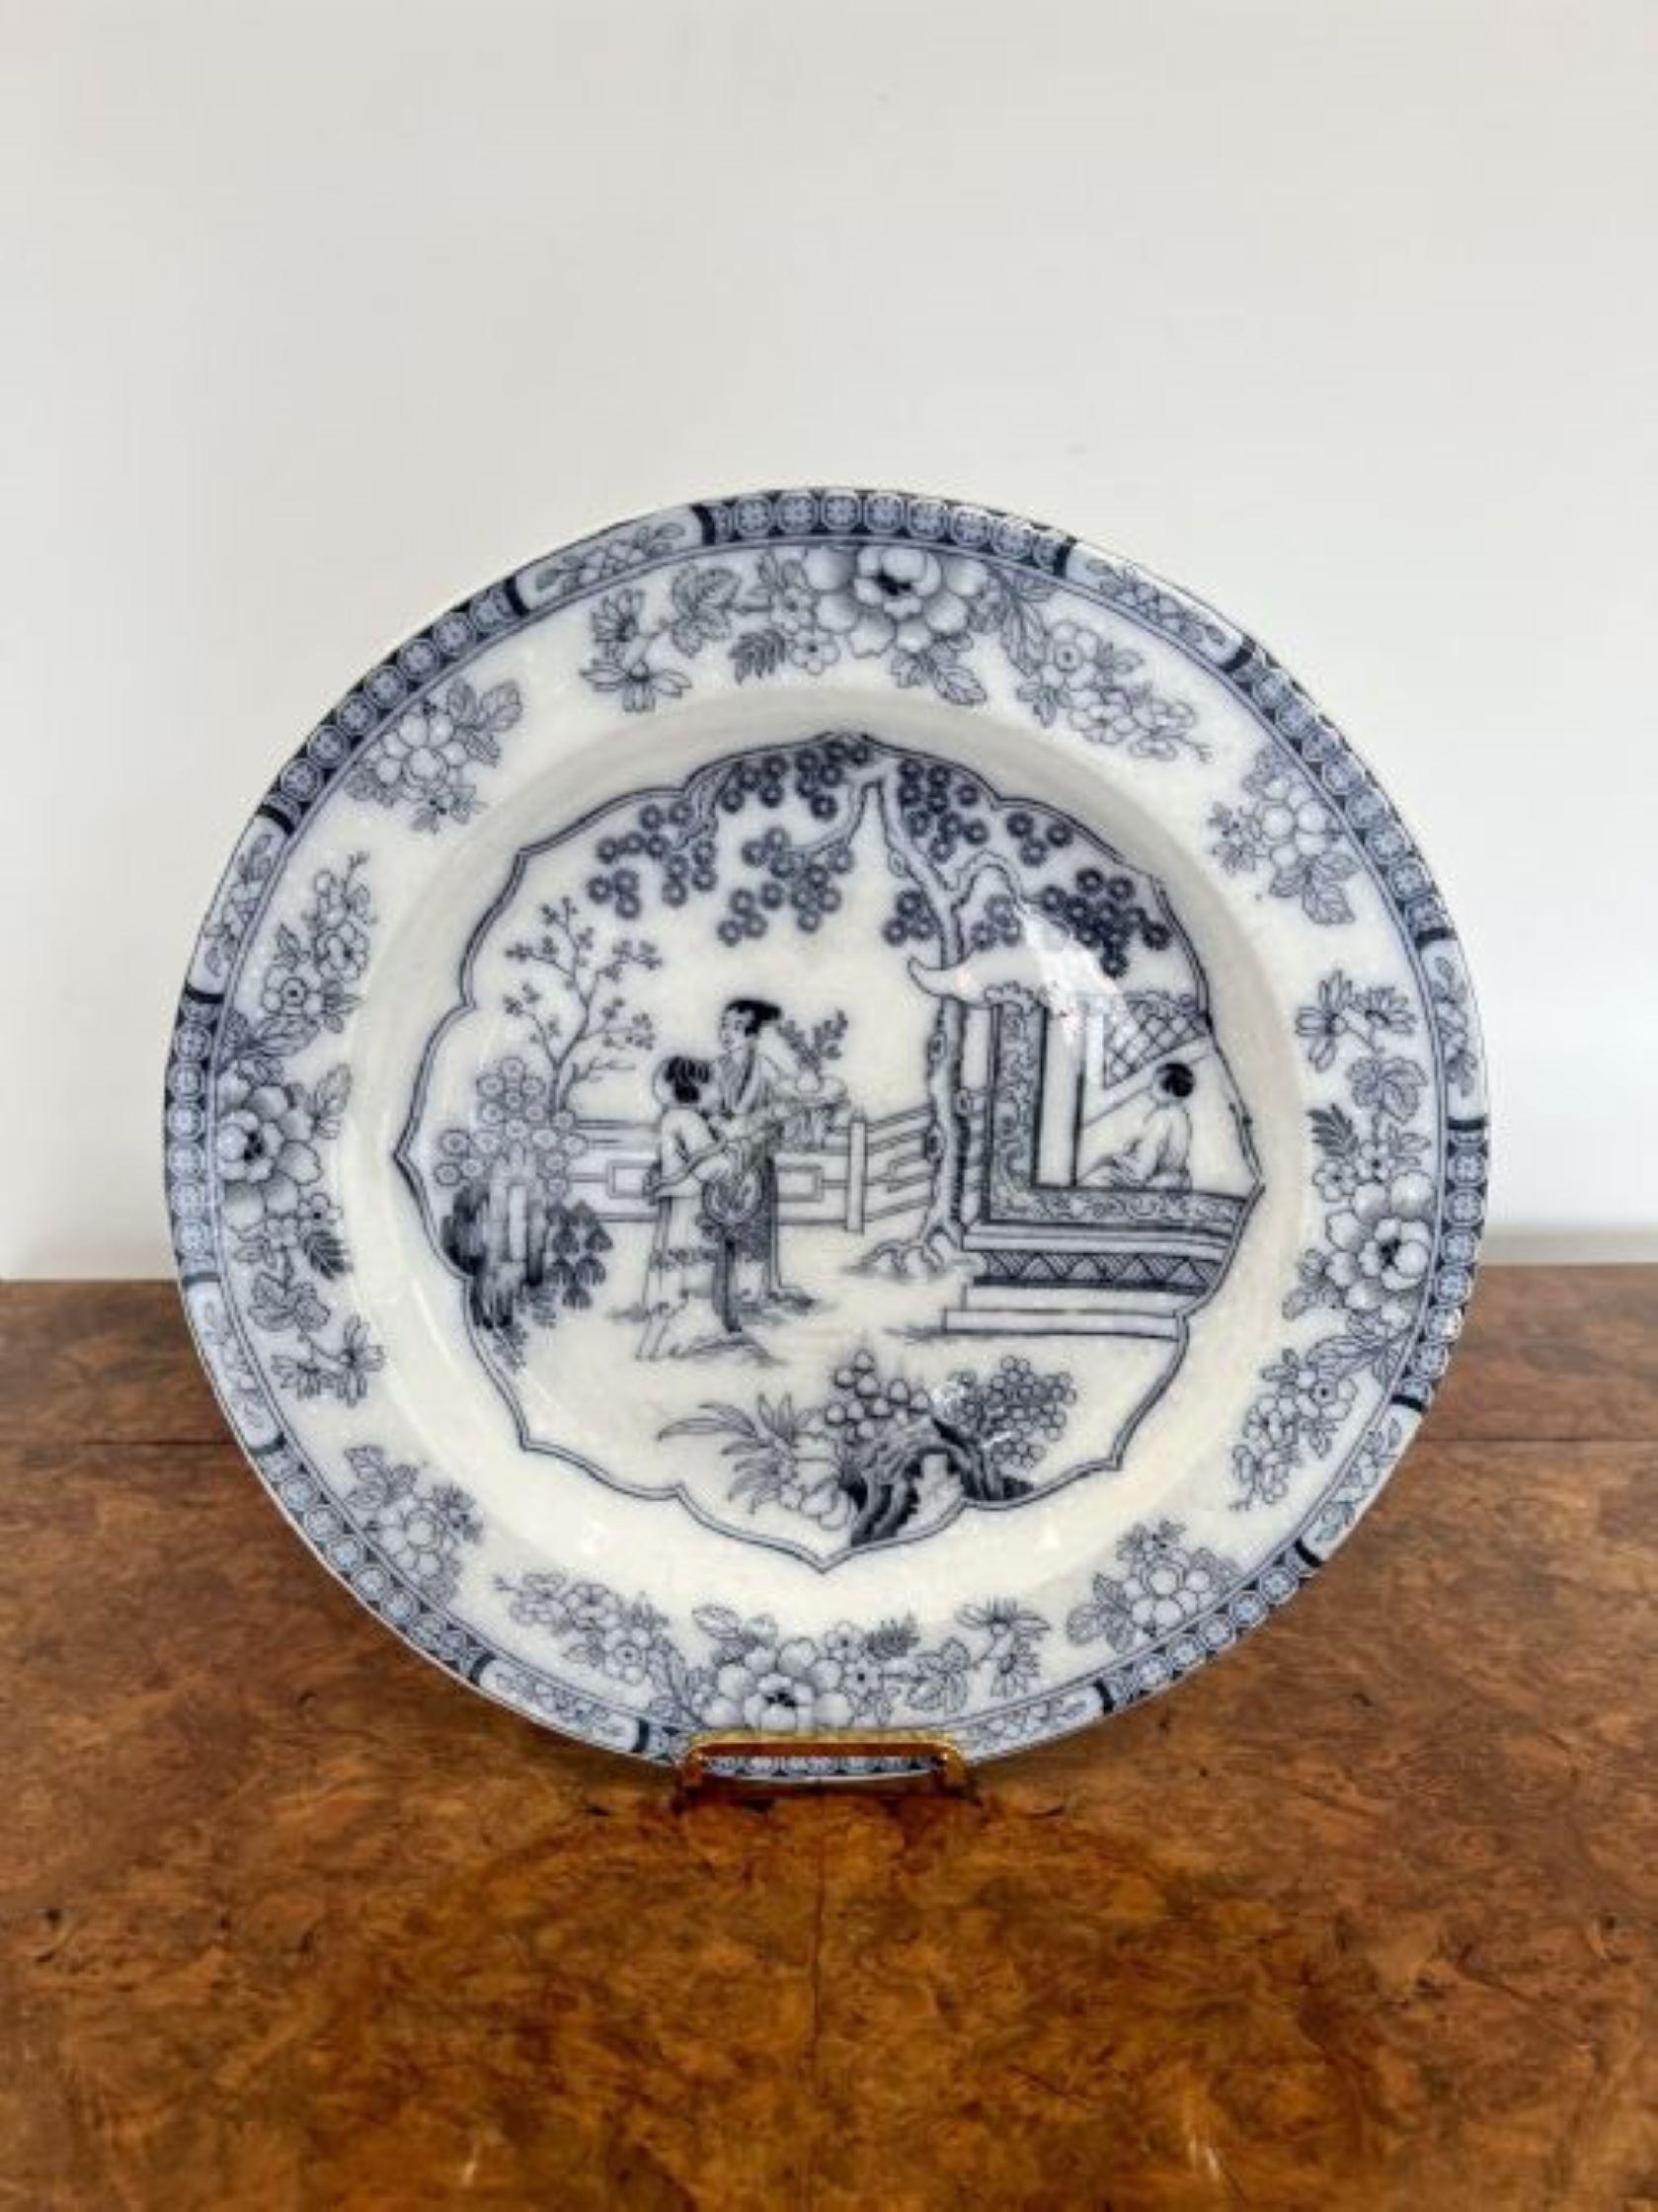 Hochwertiges Paar antiker viktorianischer blau-weißer Teller mit einem hochwertigen Paar antiker viktorianischer Untersetzer im chinesischen Stil, verziert mit traditionellen Szenen mit Weidenbäumen, Blumen und Mustern. 